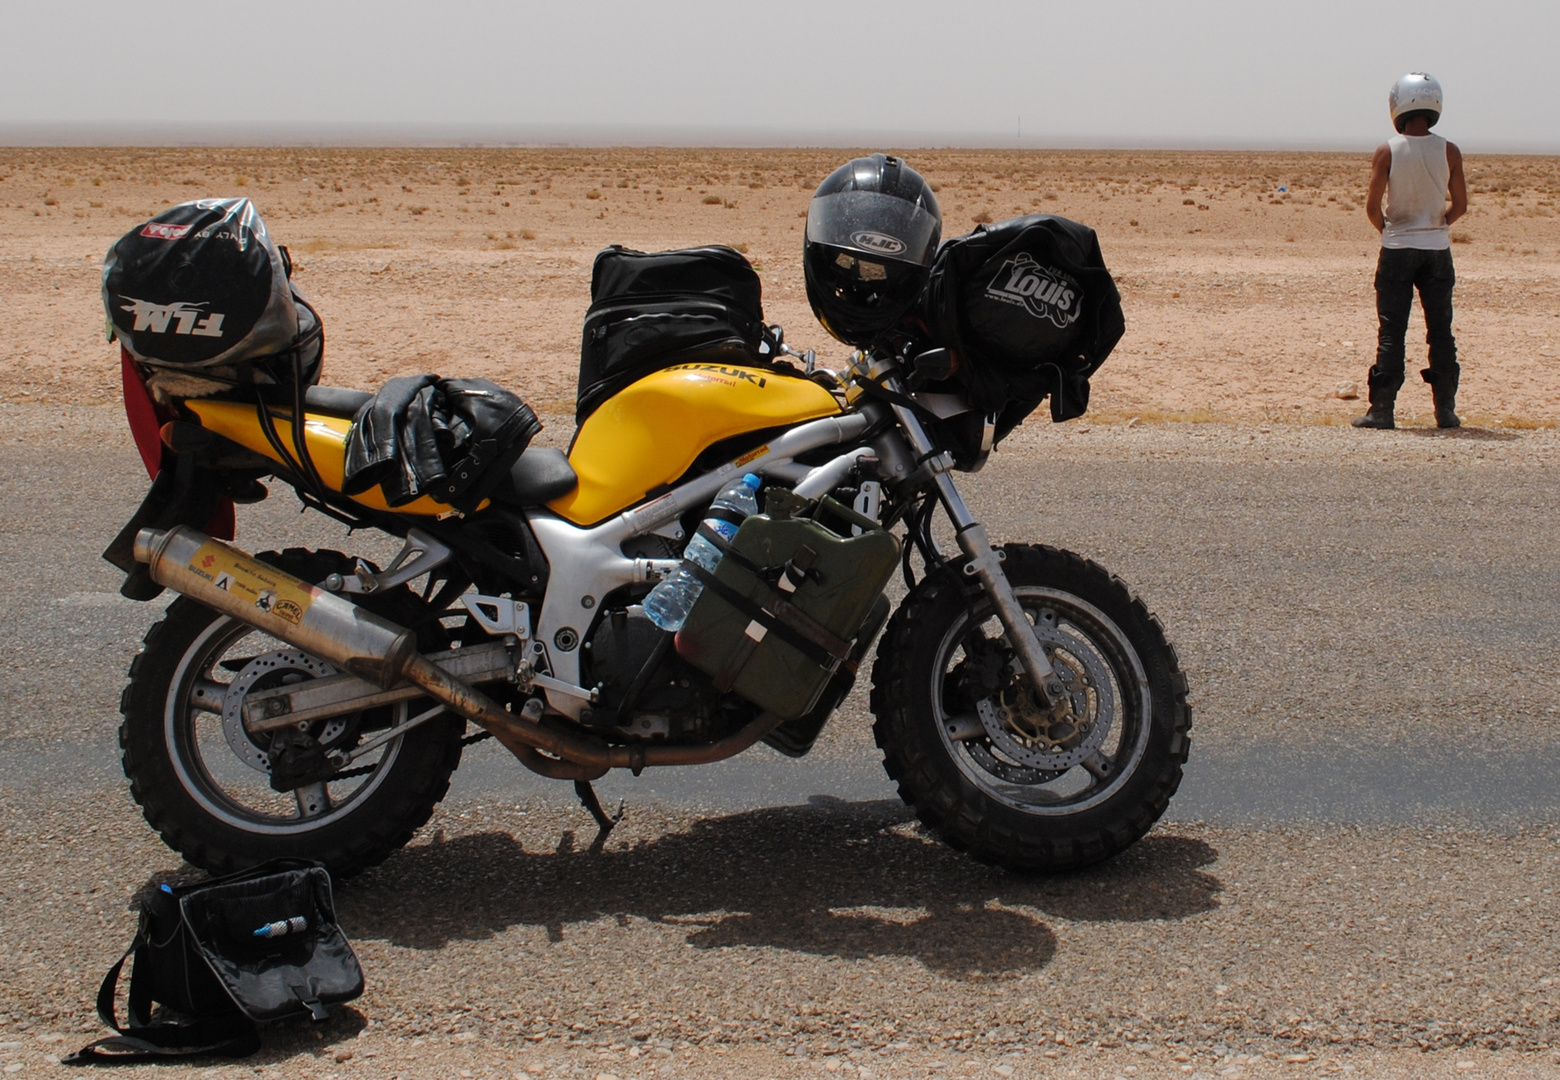 Ziel erreicht! Mit 18 Jahren zu zweit auf einer gedrosselten Suzuki SV 650 in die Sahara